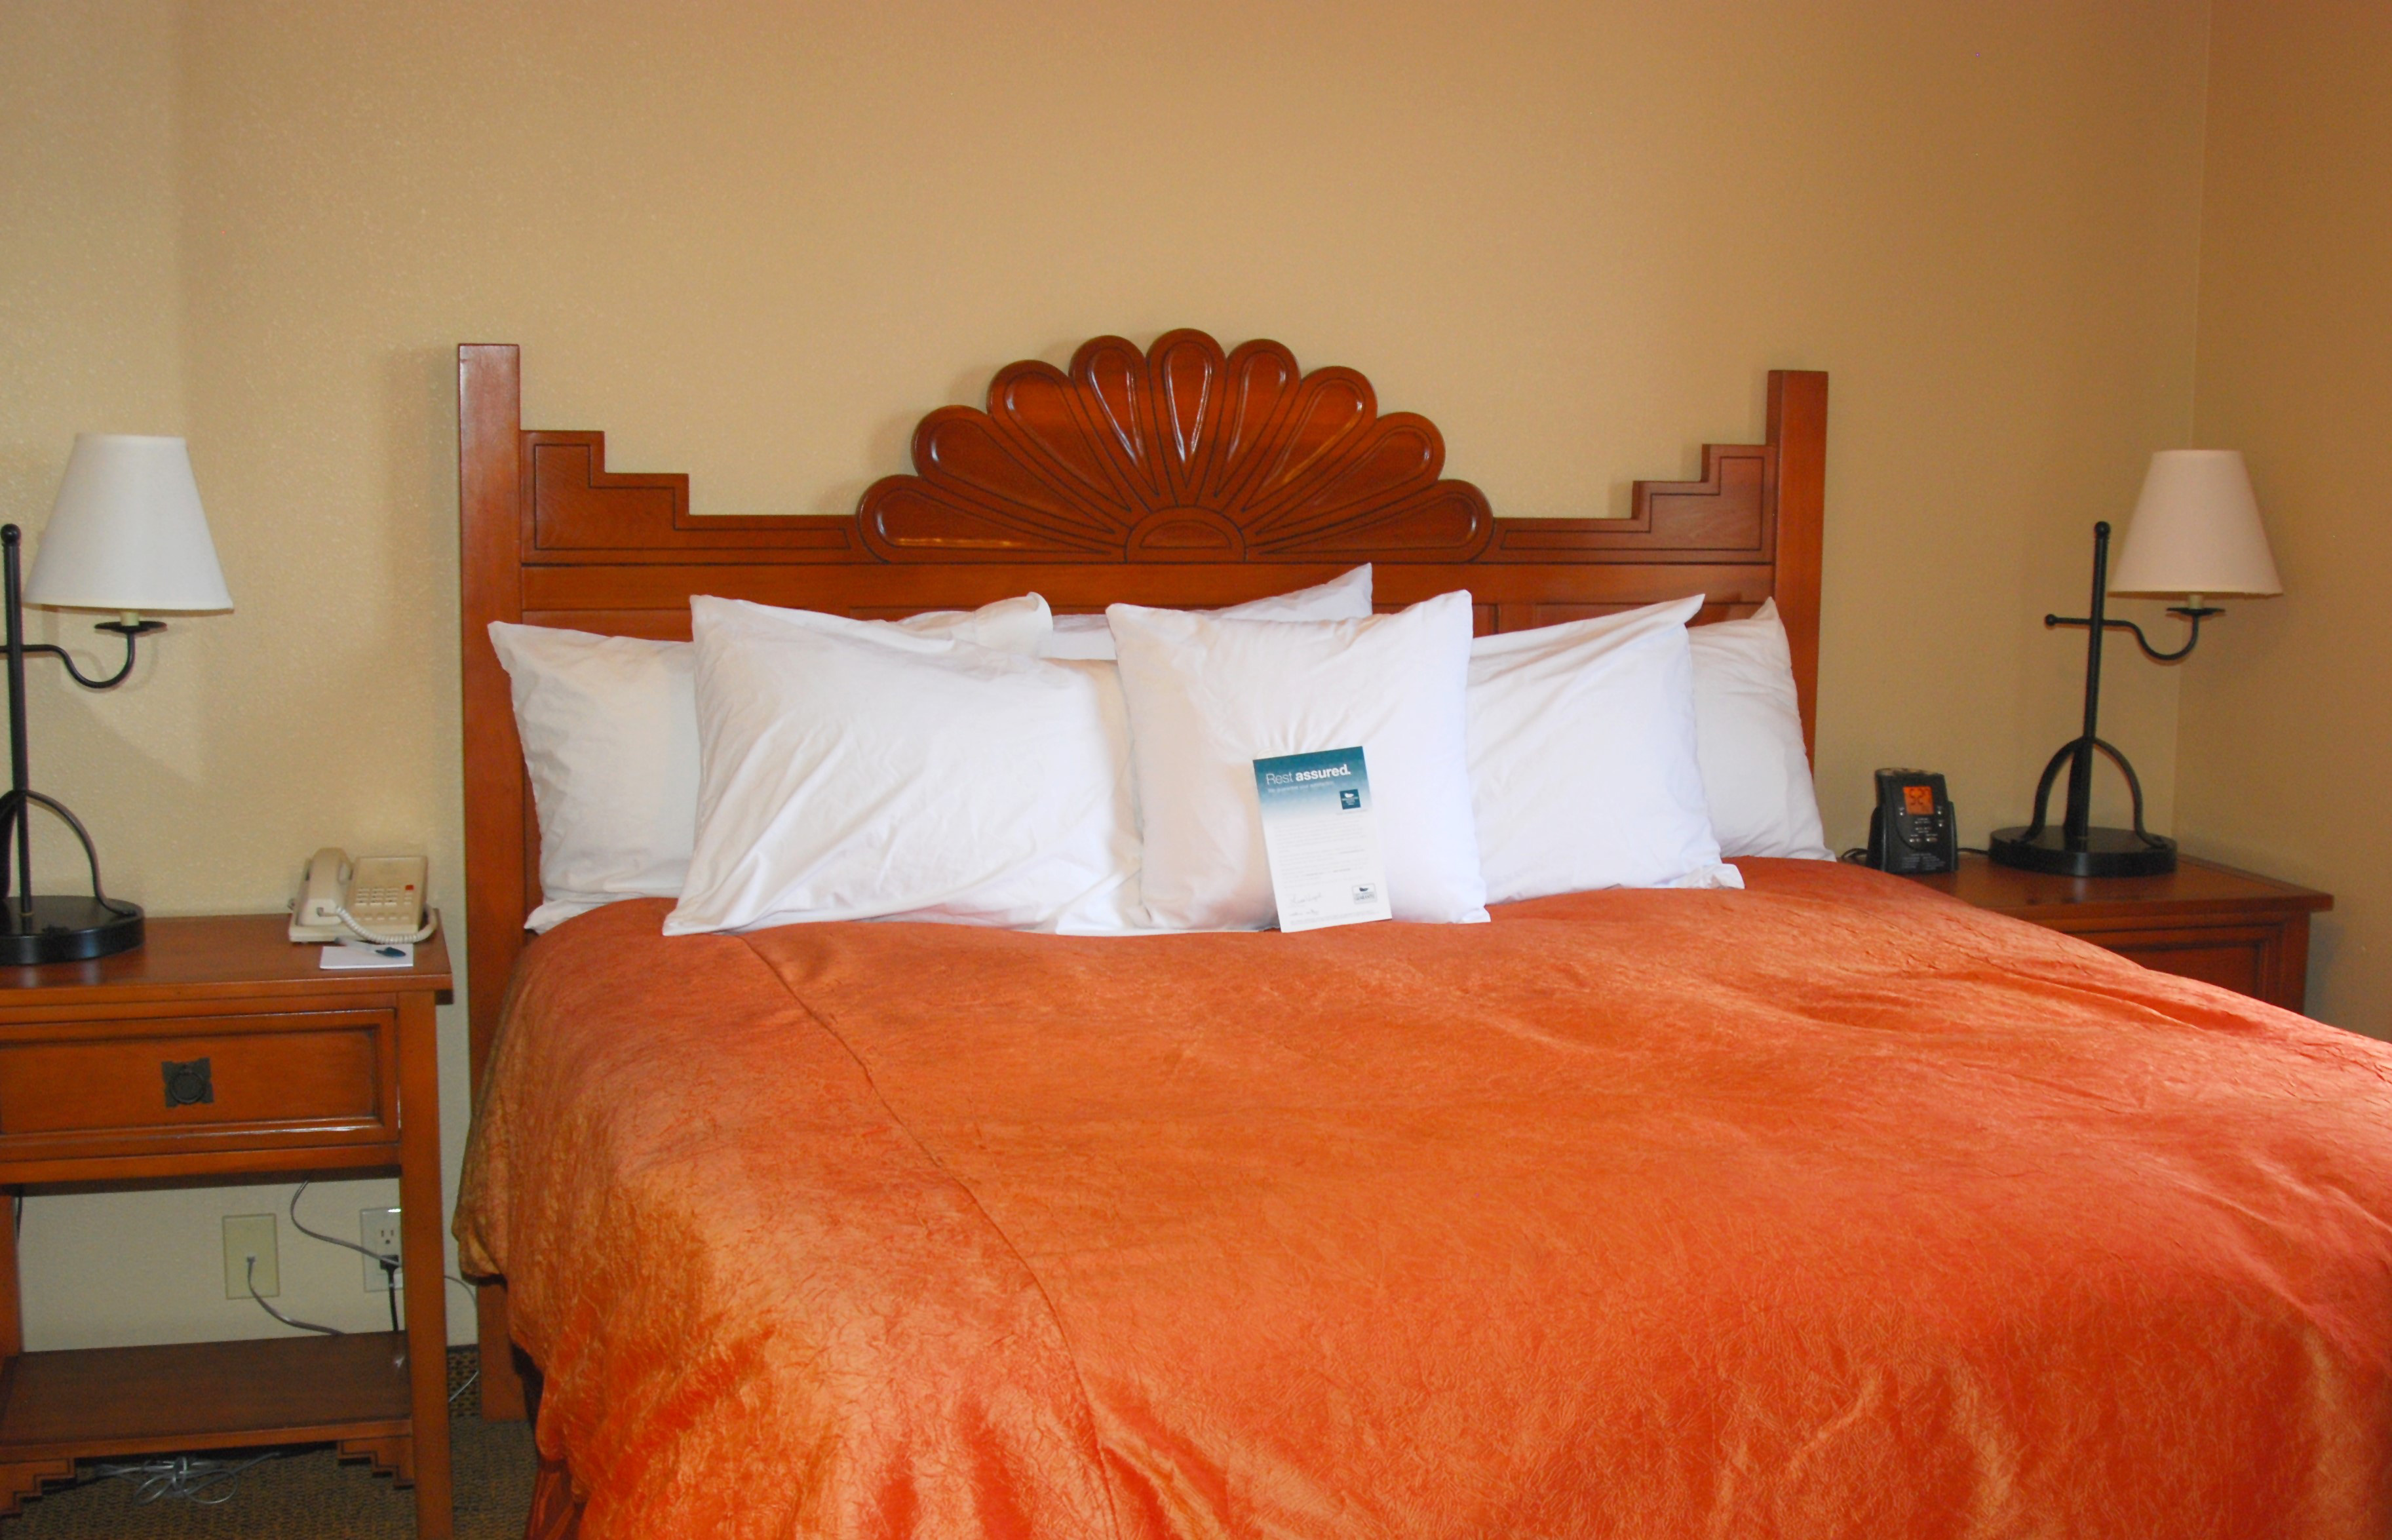 Заправленная кровать в гостинице